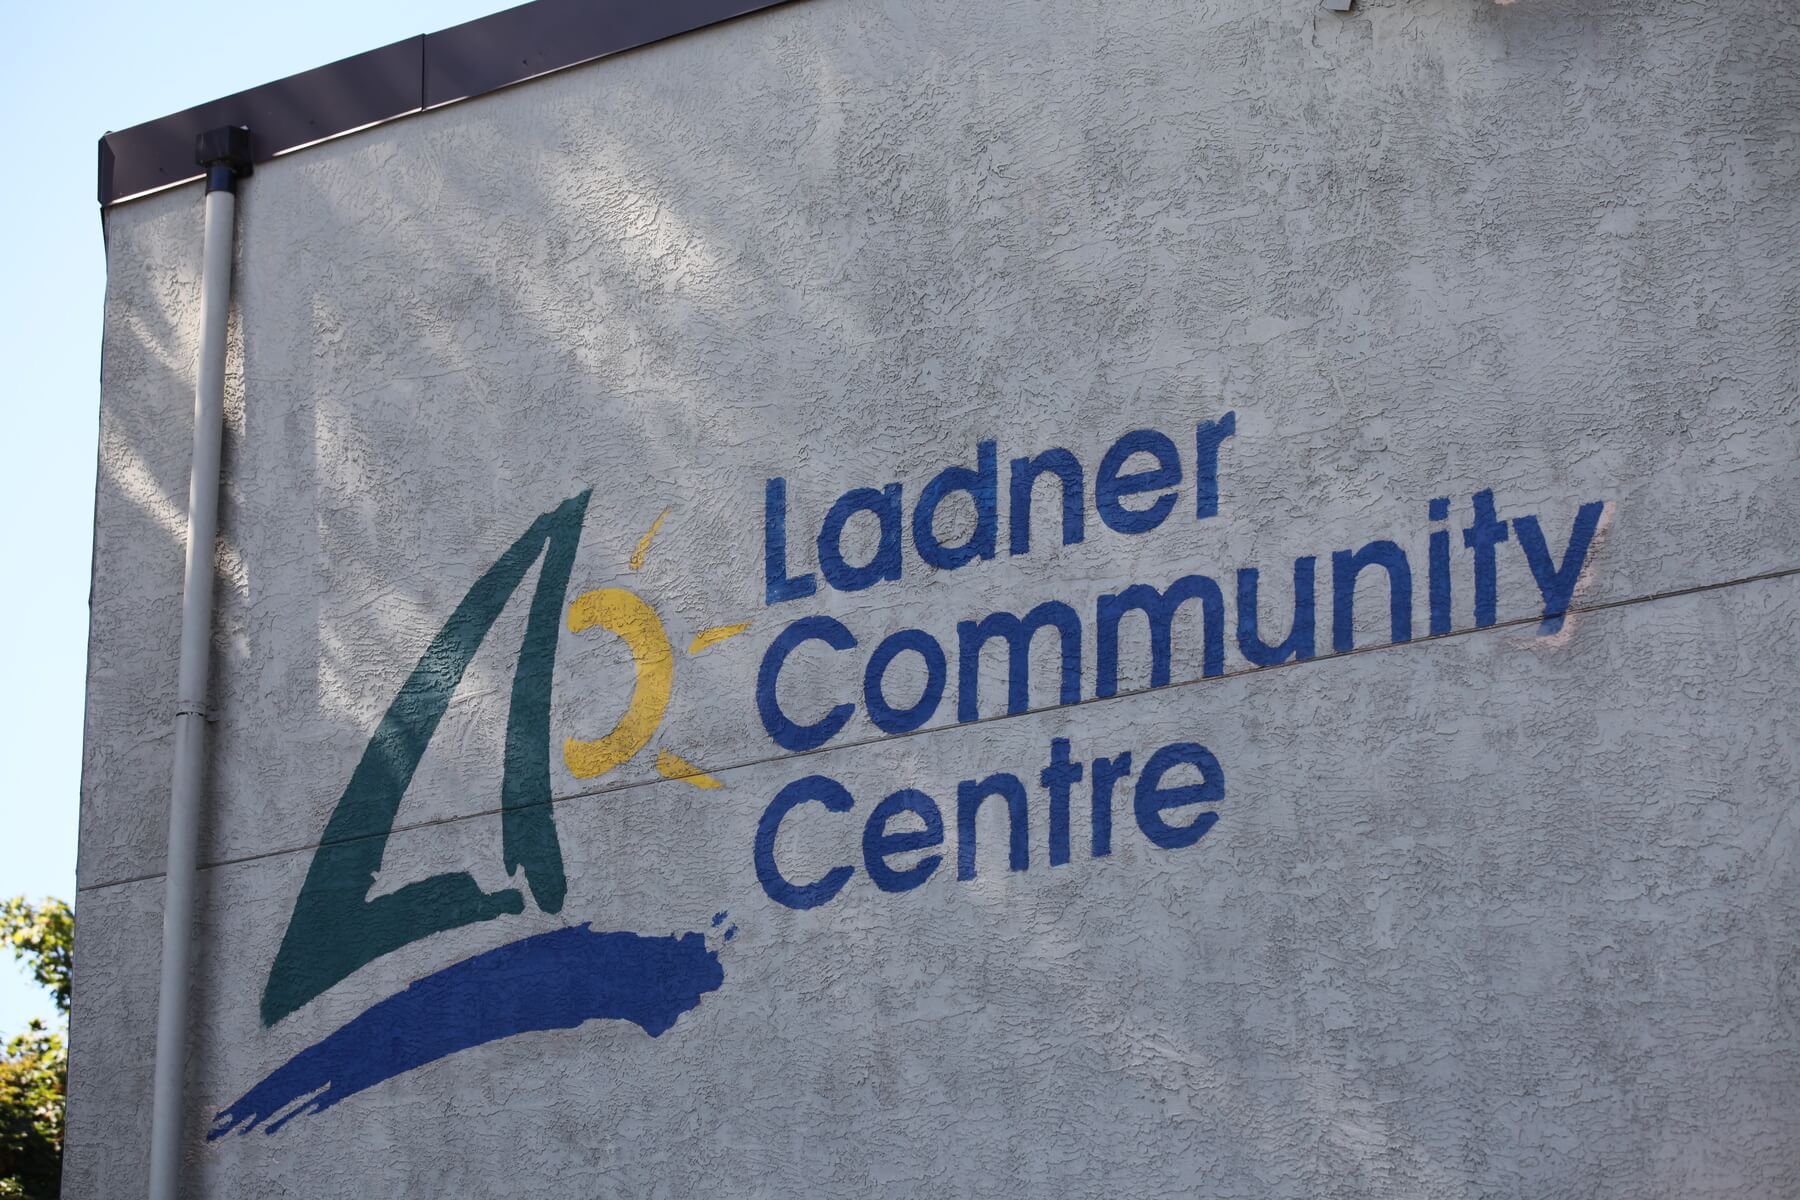 Ladner Community Center